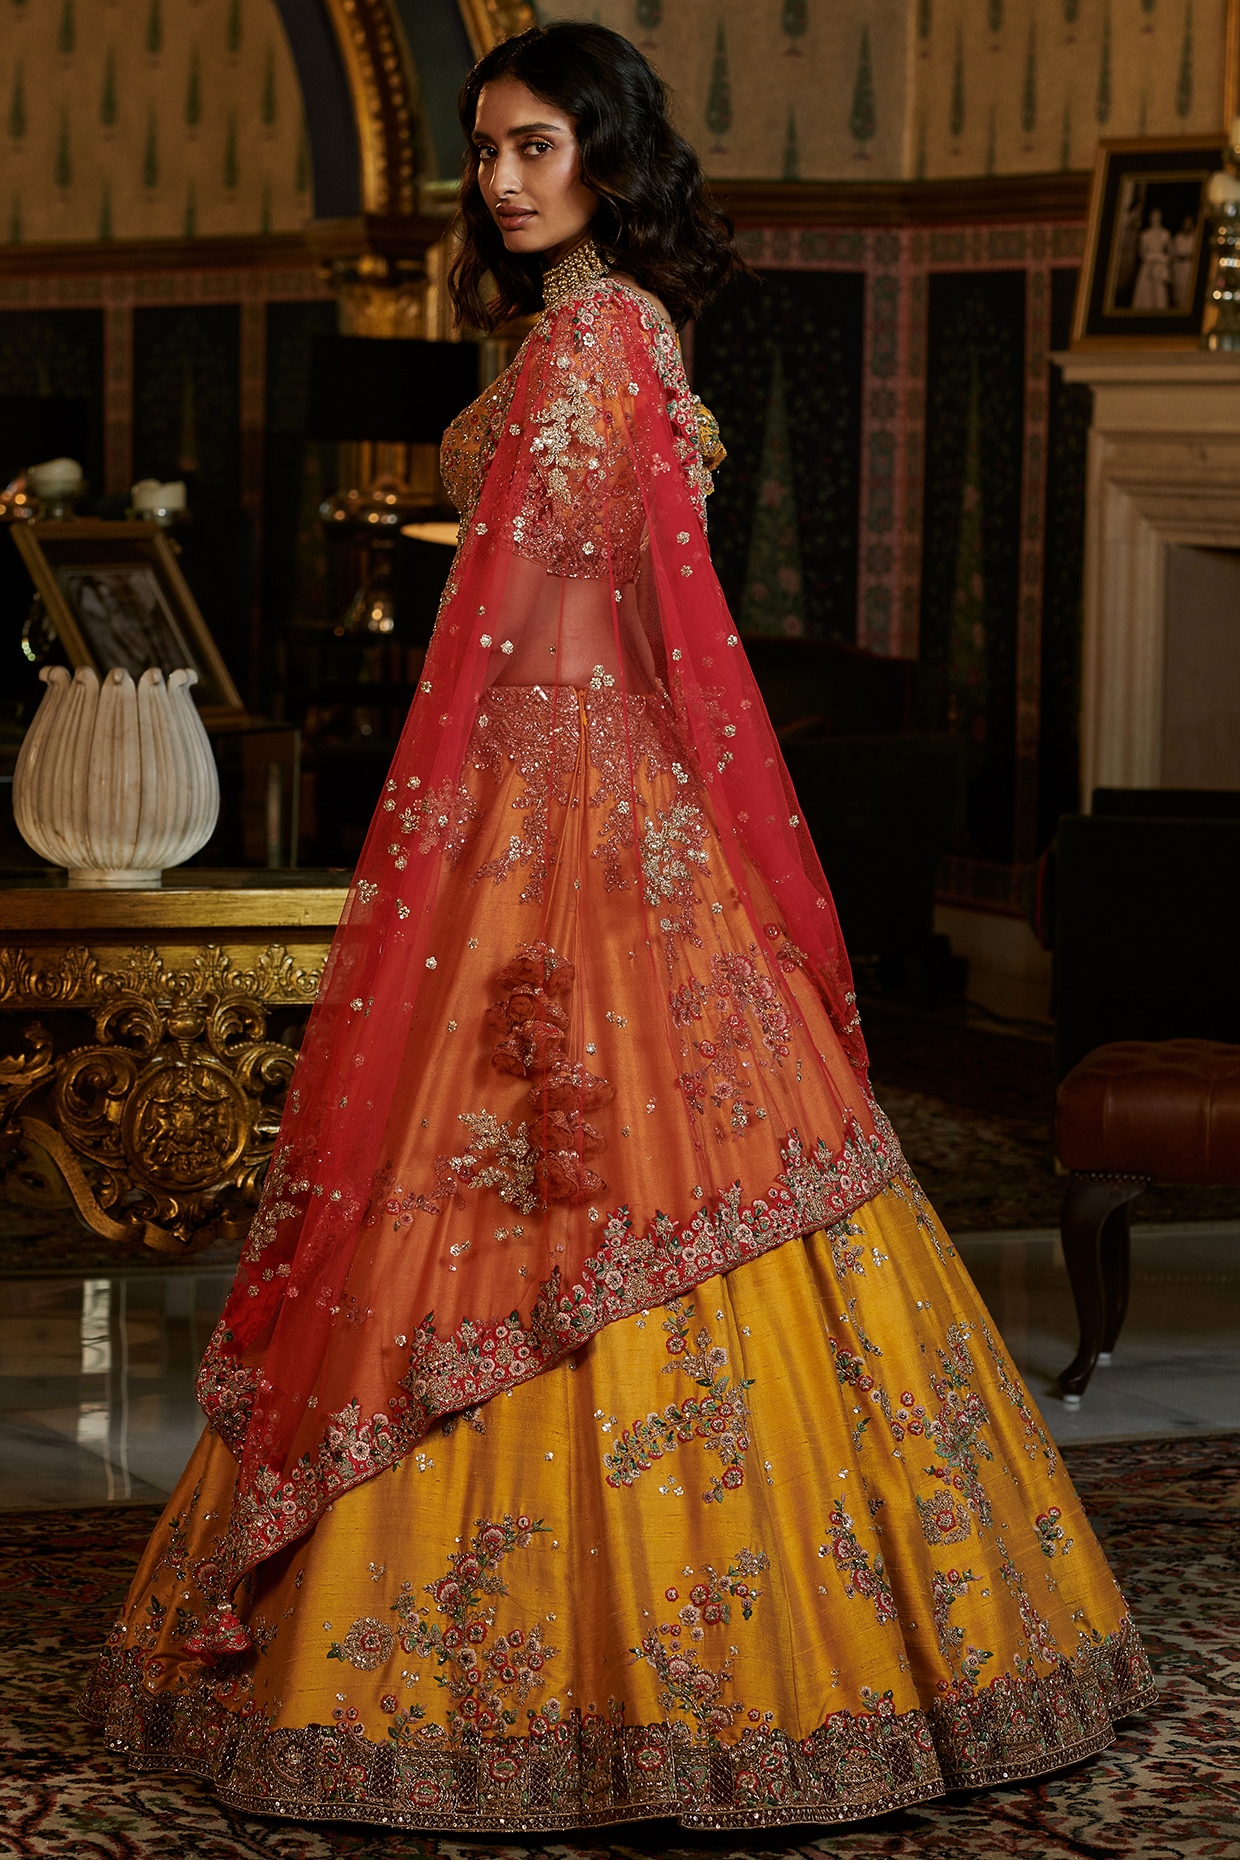 Peacock Design Lehenga in Yellow Red Shade - Rana's by Kshitija